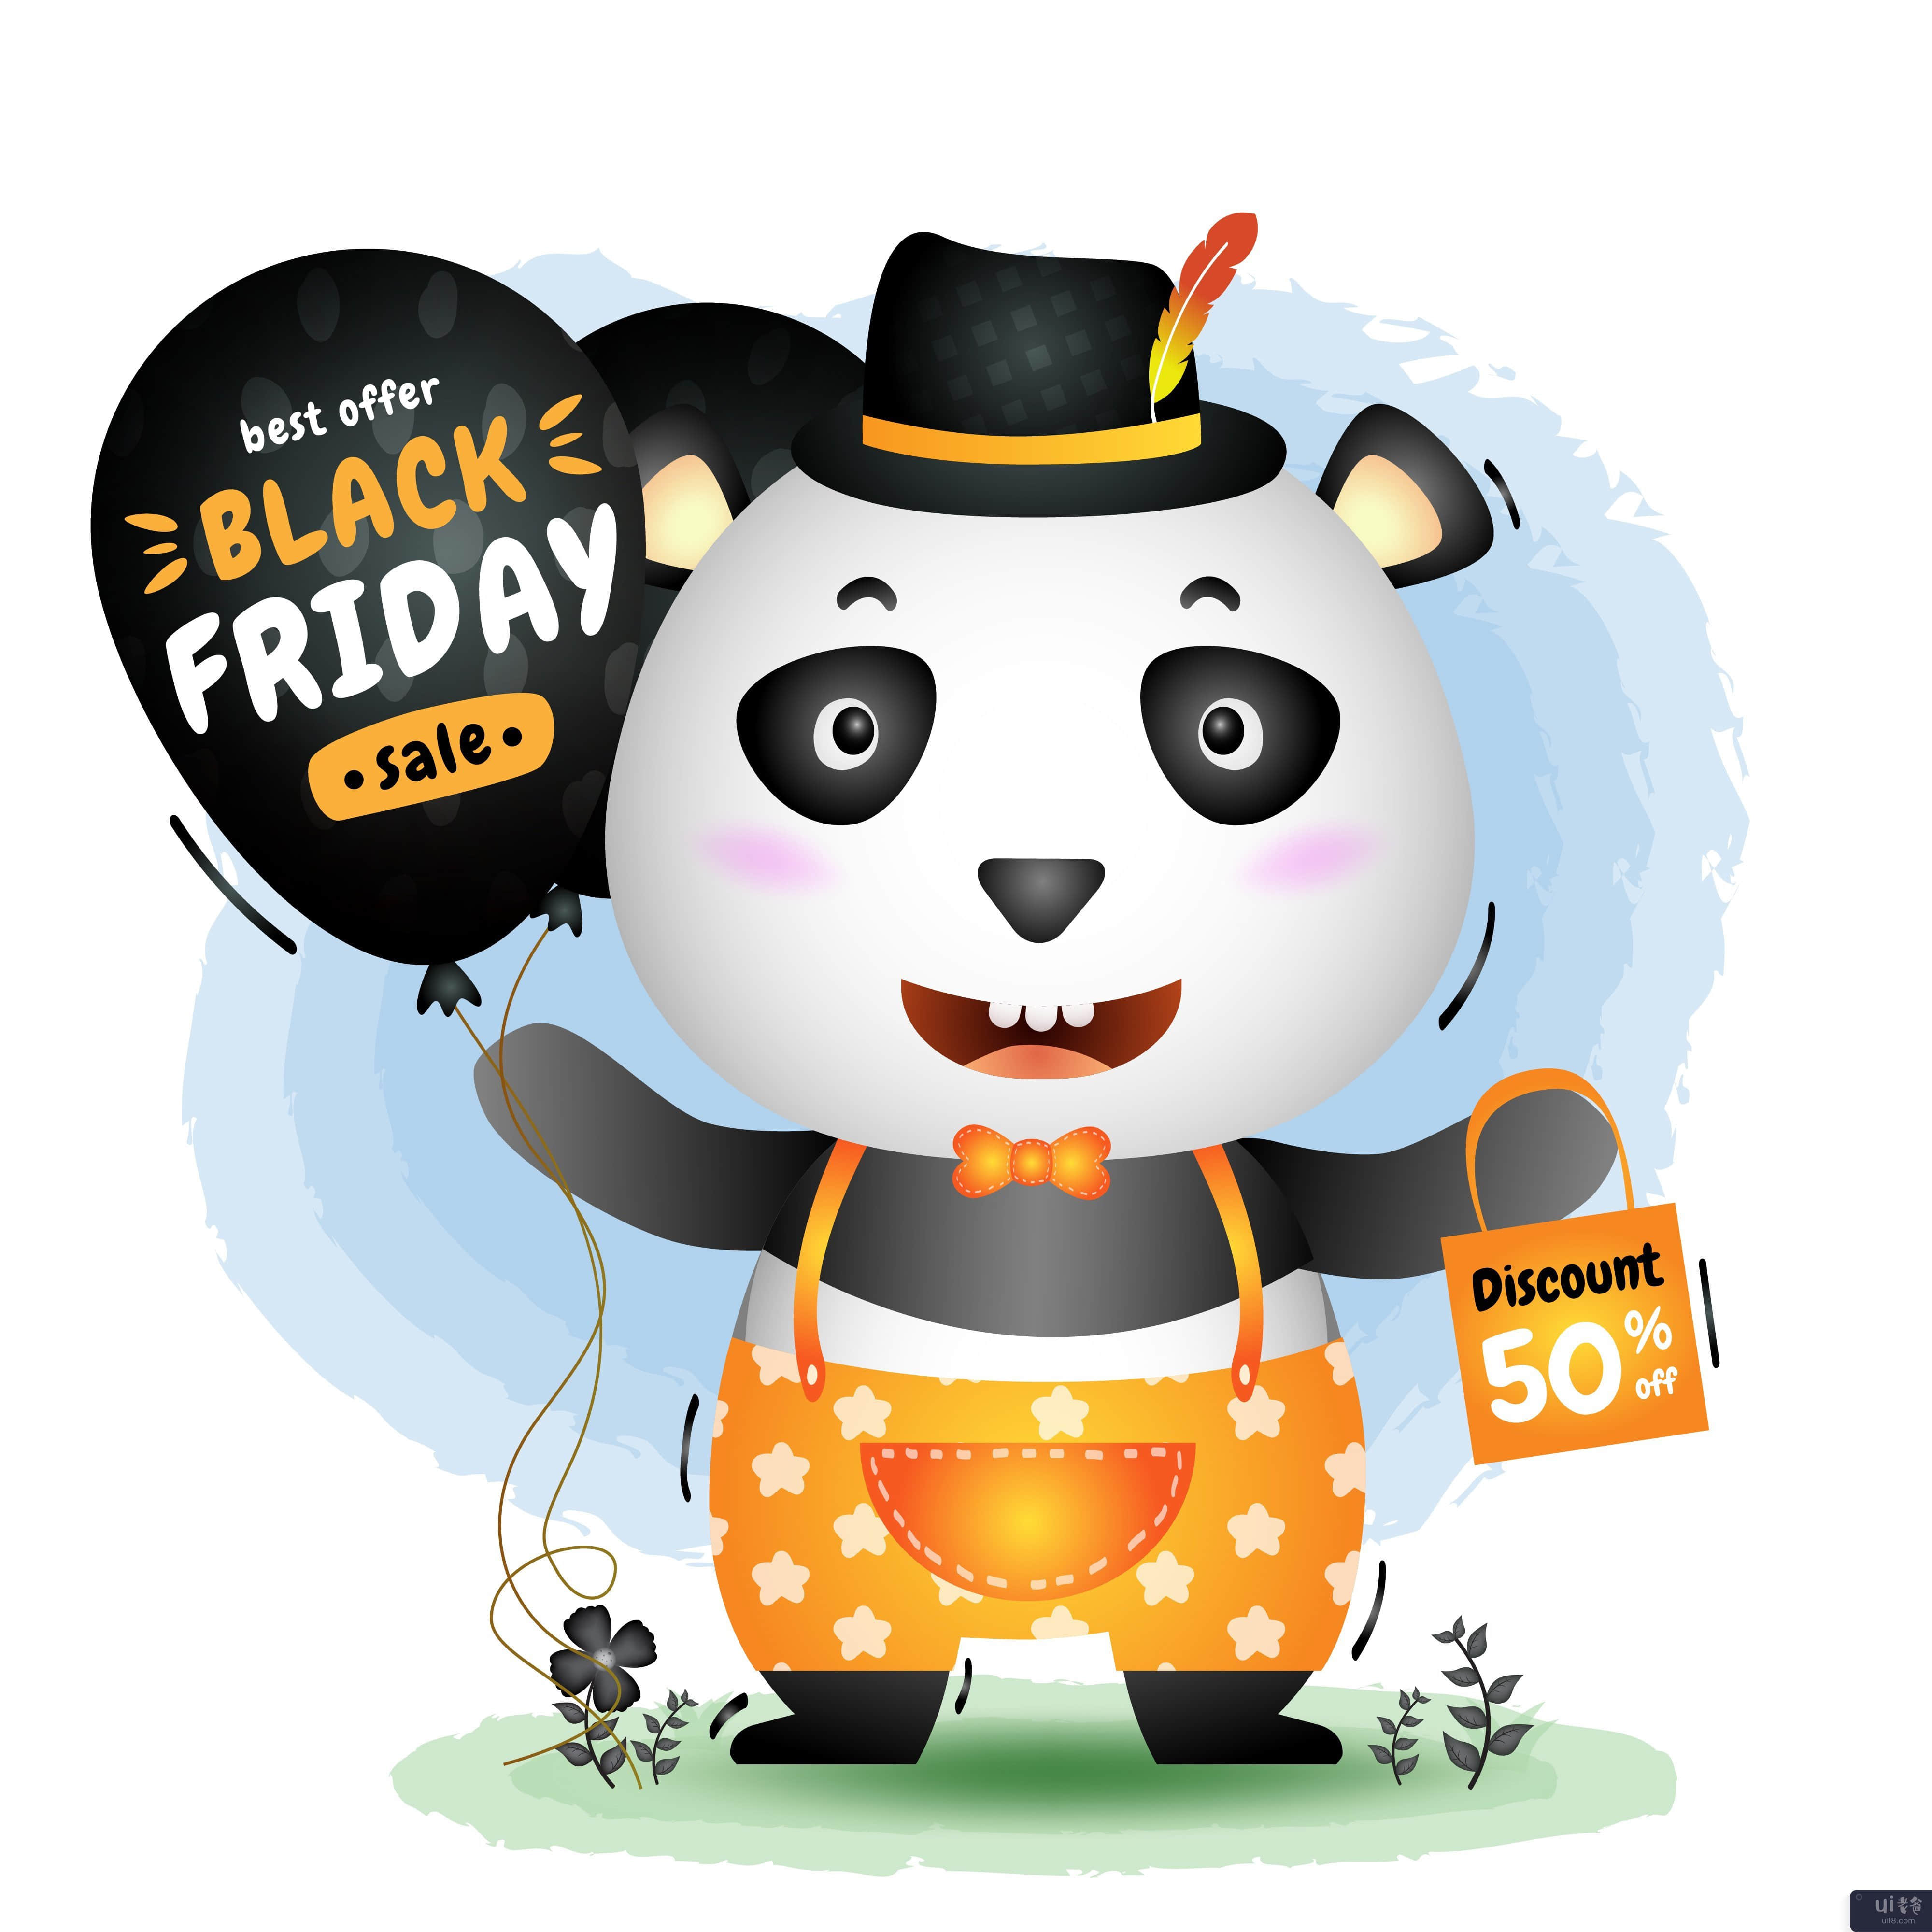 黑色星期五促销活动，提供可爱的熊猫气球促销(Black friday sale with a cute panda hold balloon promotion)插图